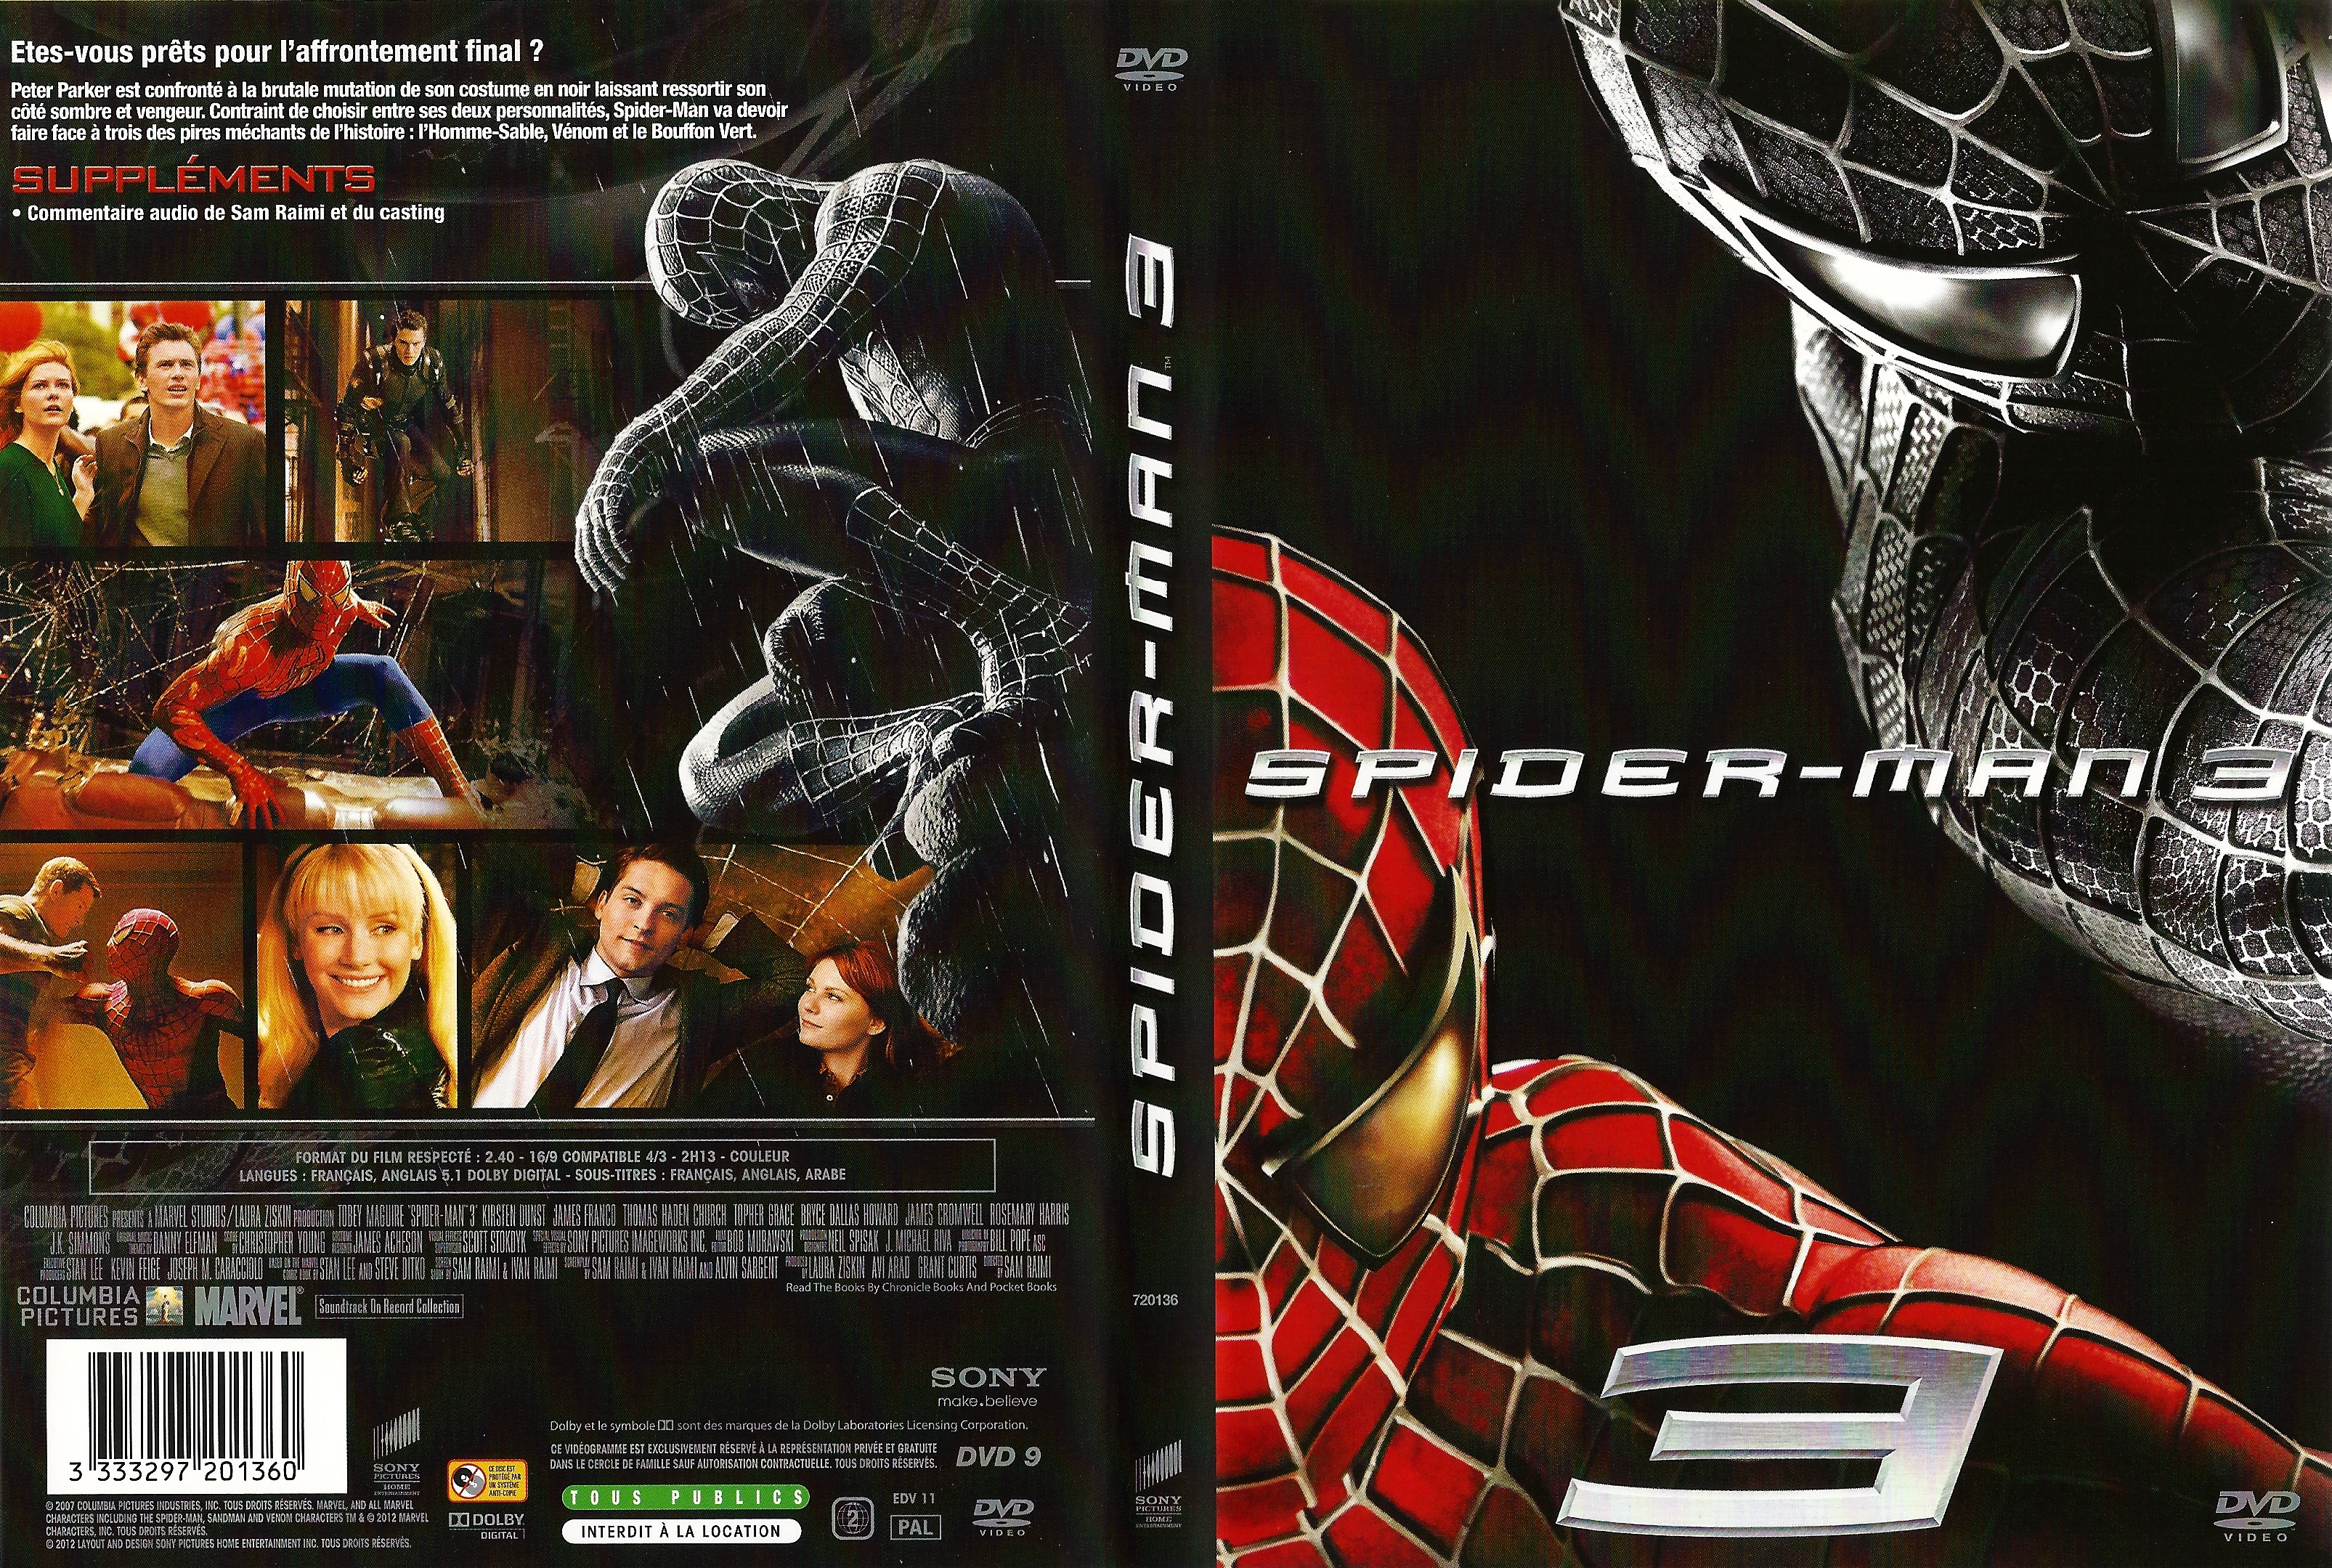 Jaquette DVD Spiderman 3 v5